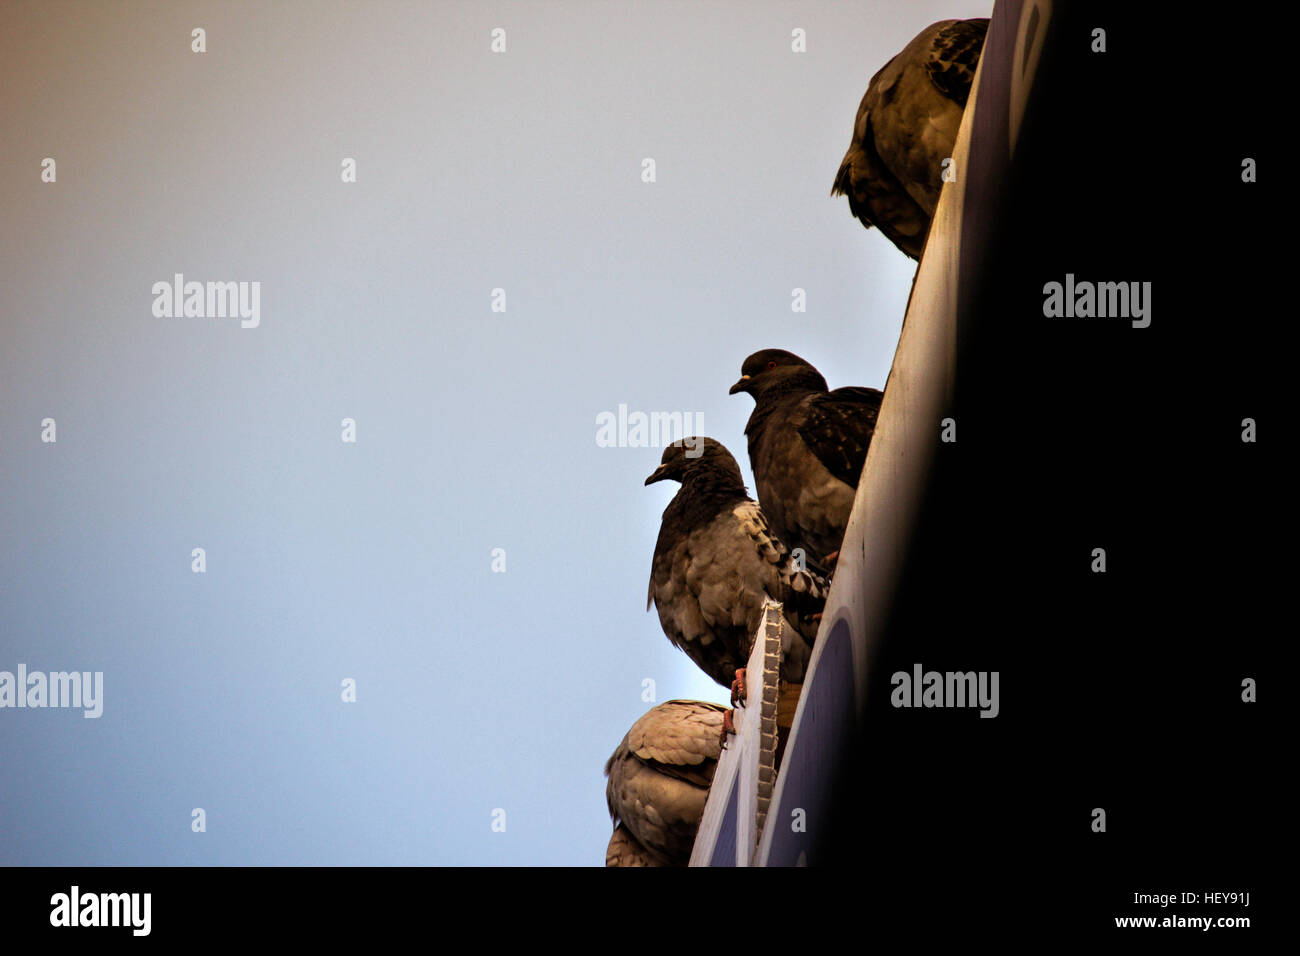 Fotografía de algunas palomas en una escena urbana Foto de stock